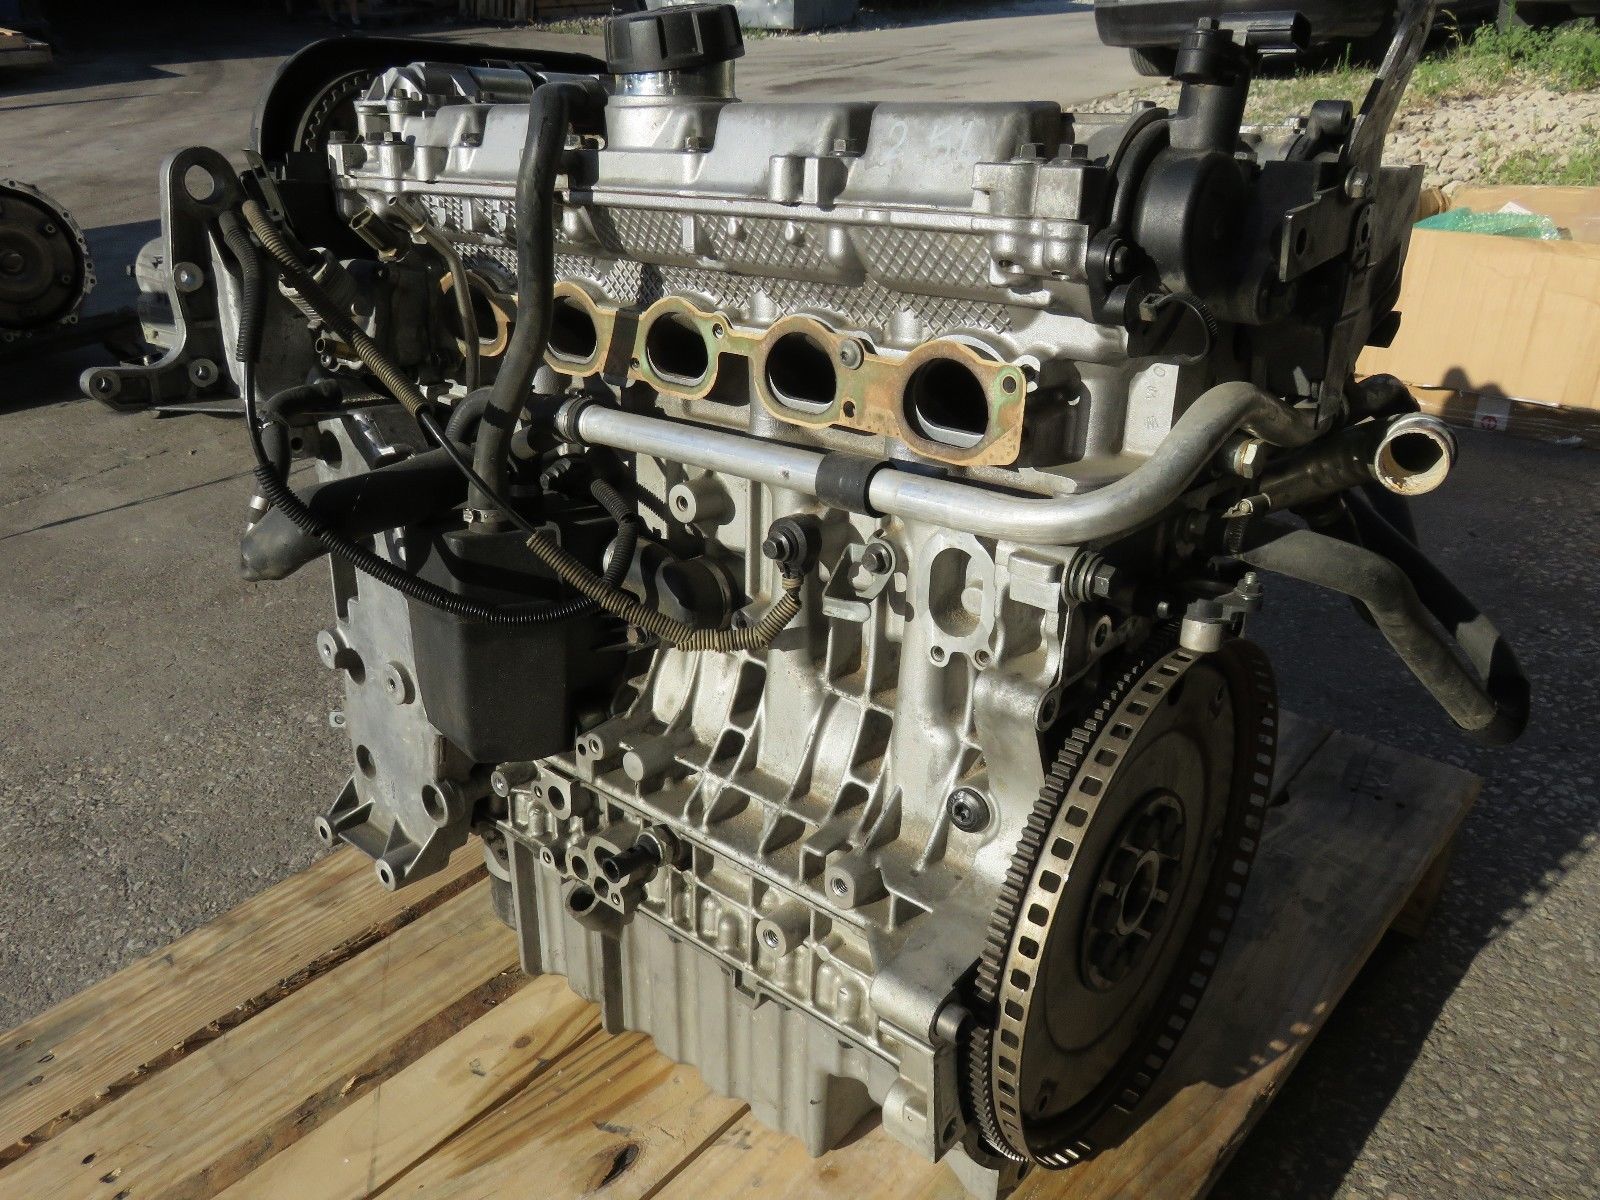 Volvo s60 двигатели. Двигатель Volvo b5254t. Двигатель Volvo s60 2.5 турбо. B5254s двигатель Вольво. Двигатель Вольво xc90 2.5 турбо.